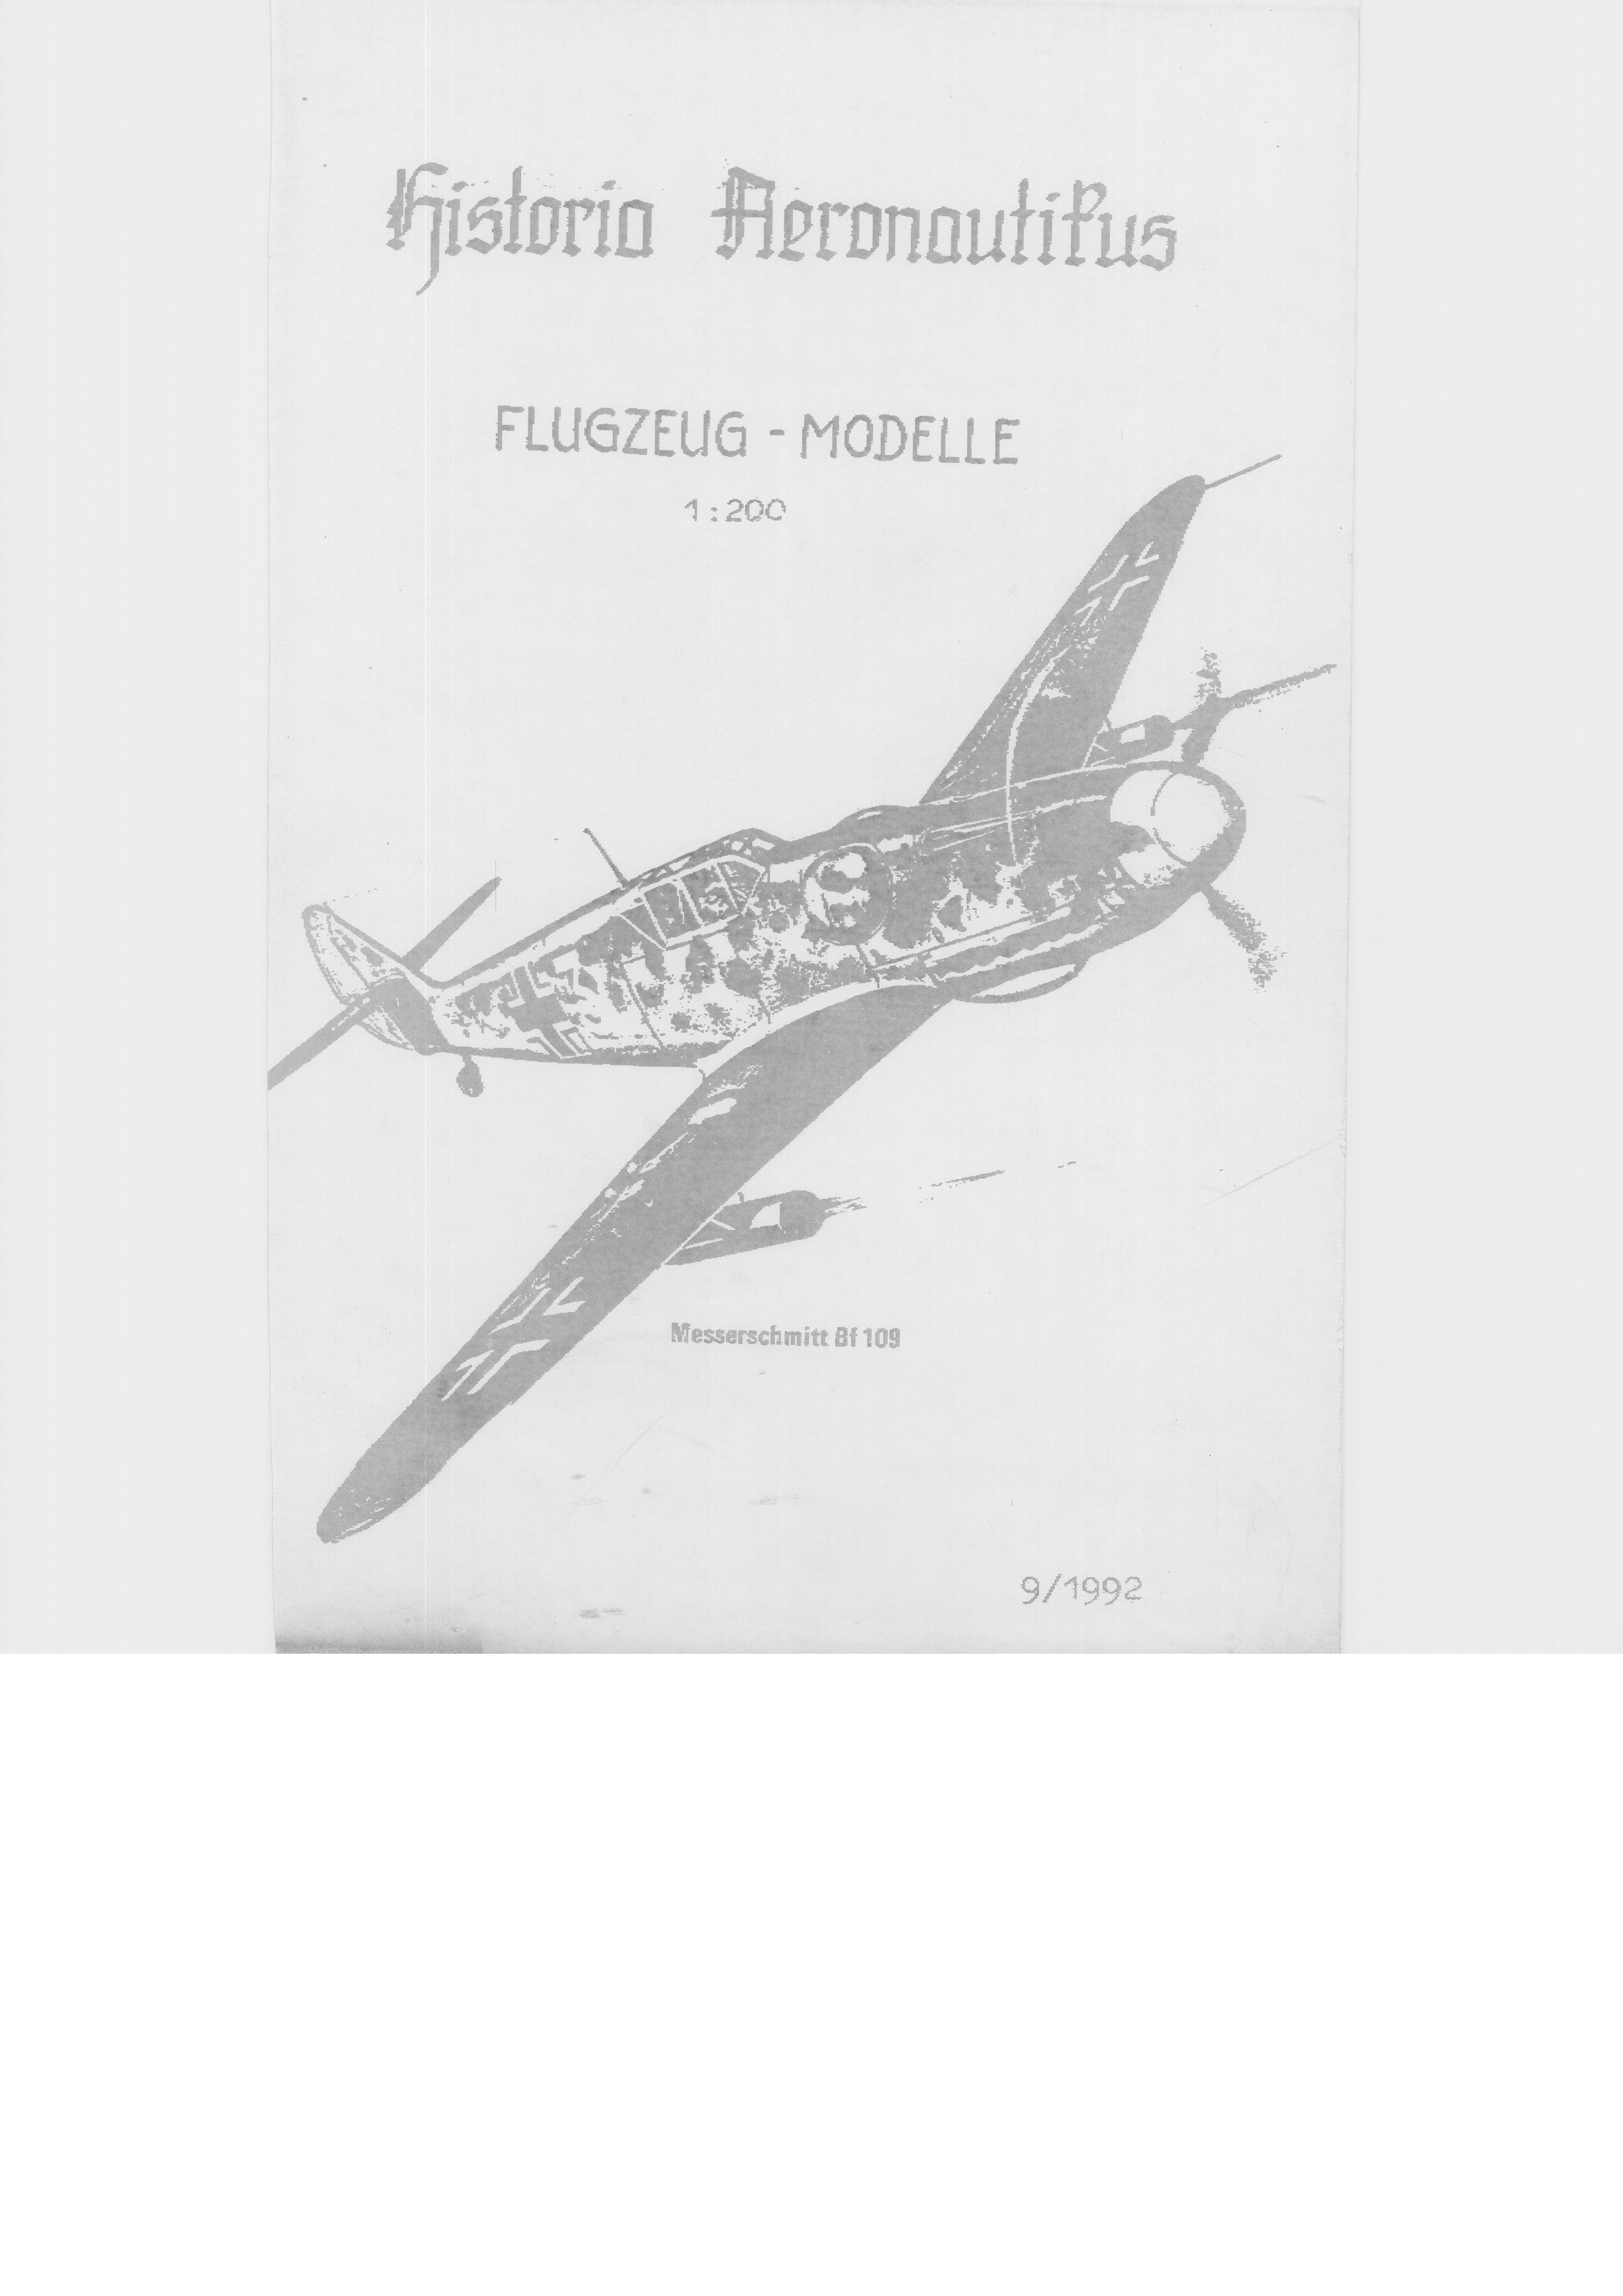 Historia Aeronaiticus Katalog02.jpg